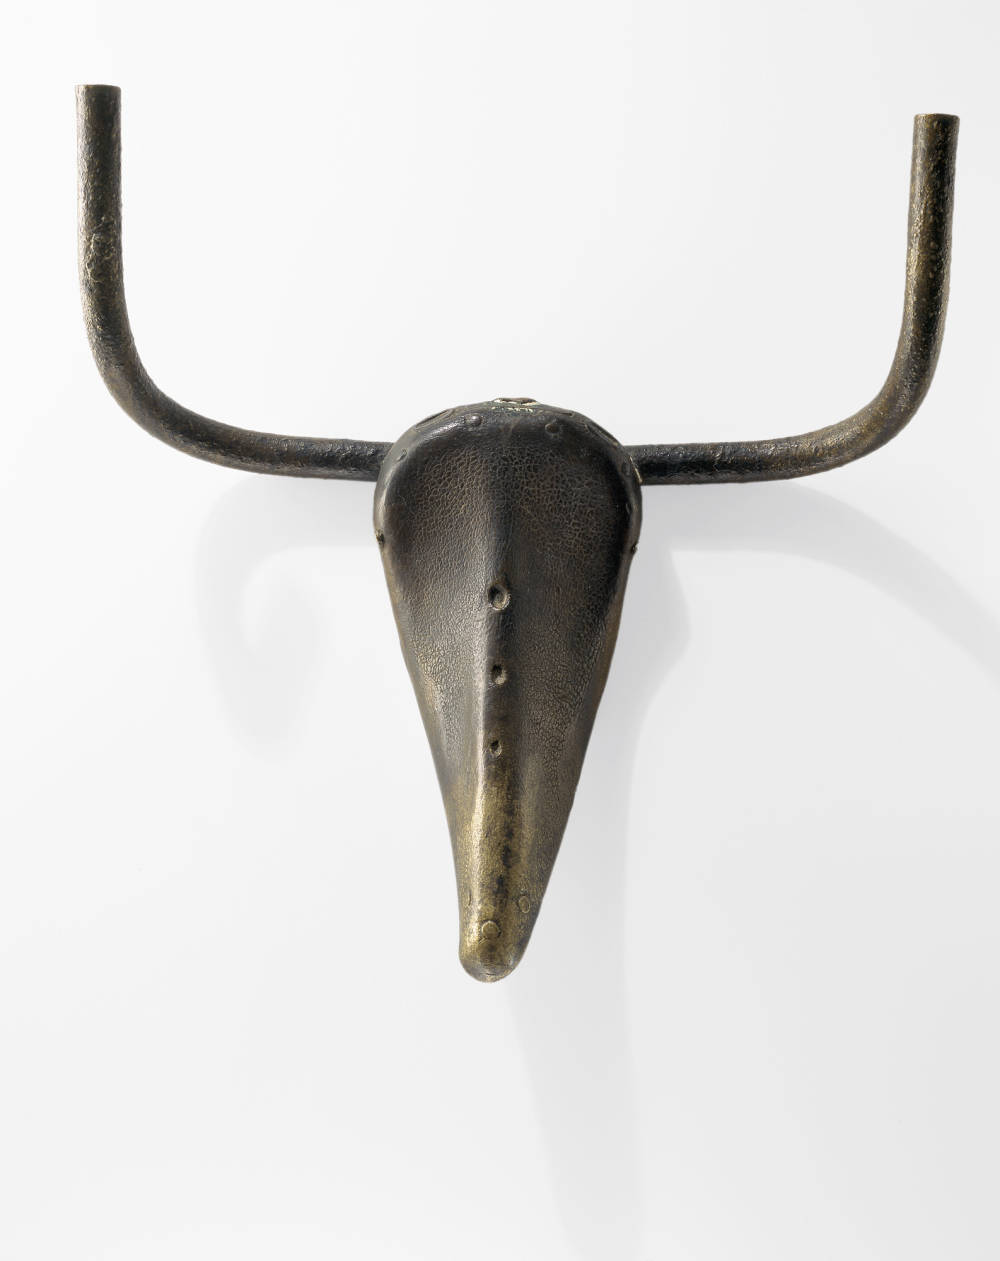  Pablo Picasso , Bull's Head, 1942 